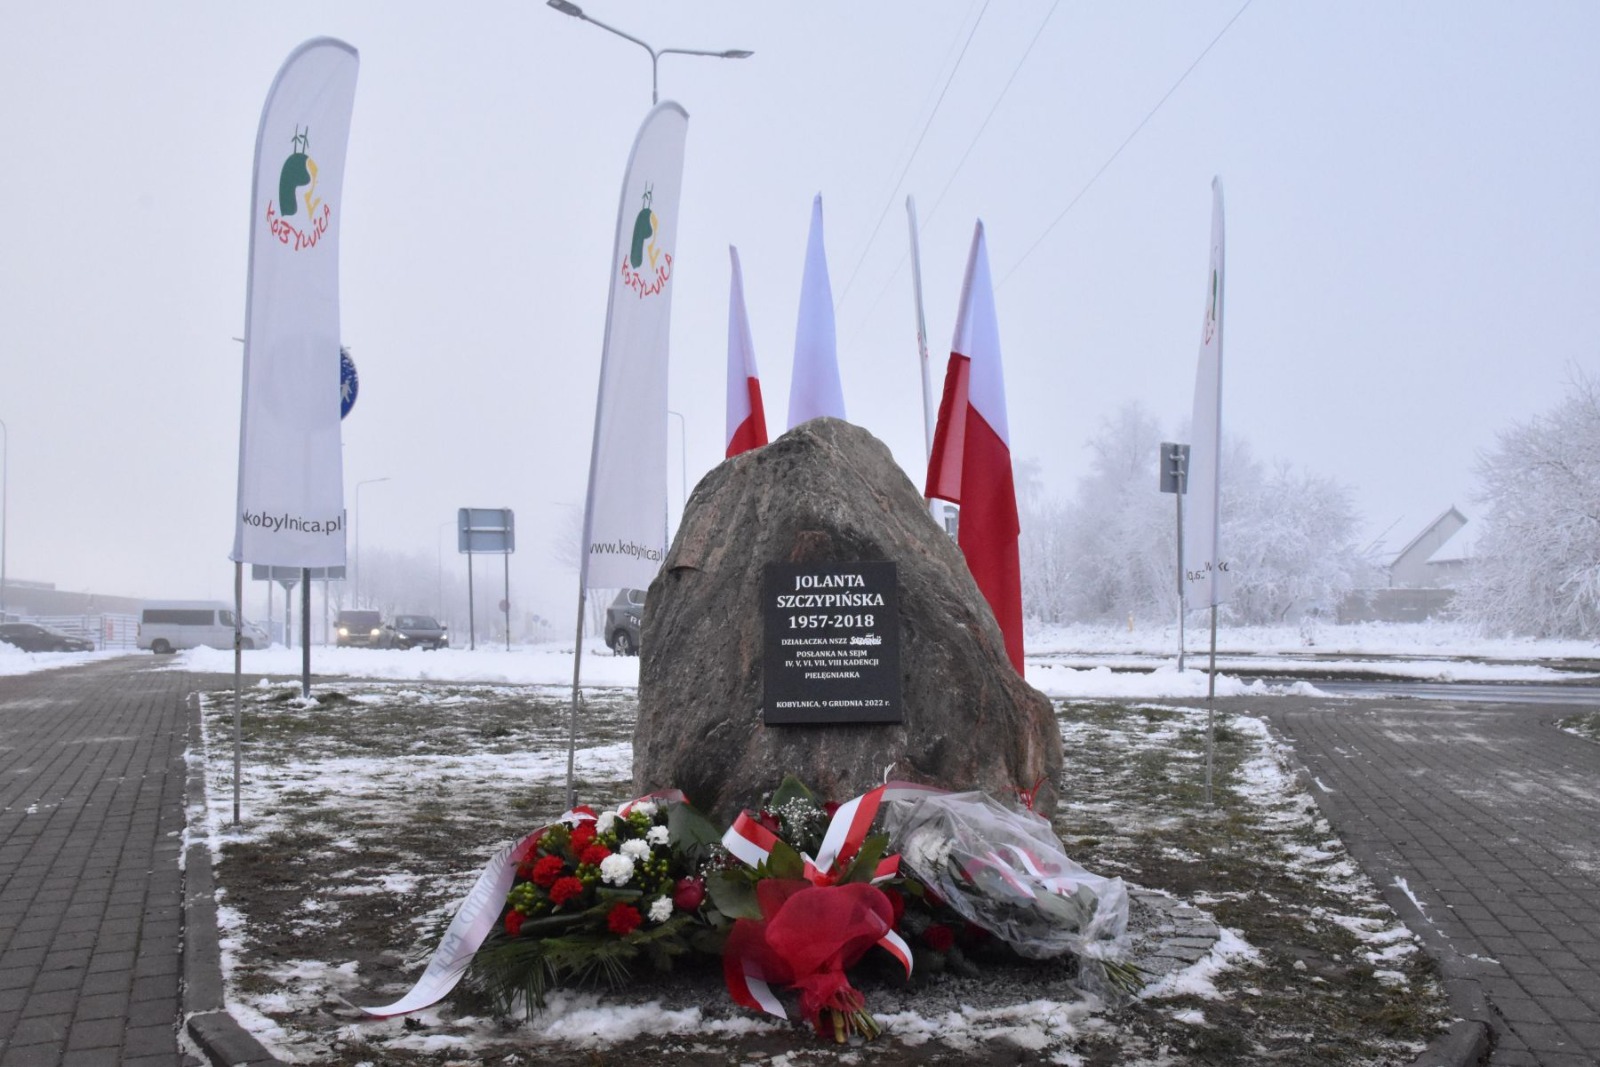 Podczas tego wydarzenia miało miejsce również odsłonięcie kamienia z tabliczką upamiętniającą śp. Jolantę Szczypińską oraz otwarcie nowego budynku Urzędu Gminy Kobylnica.